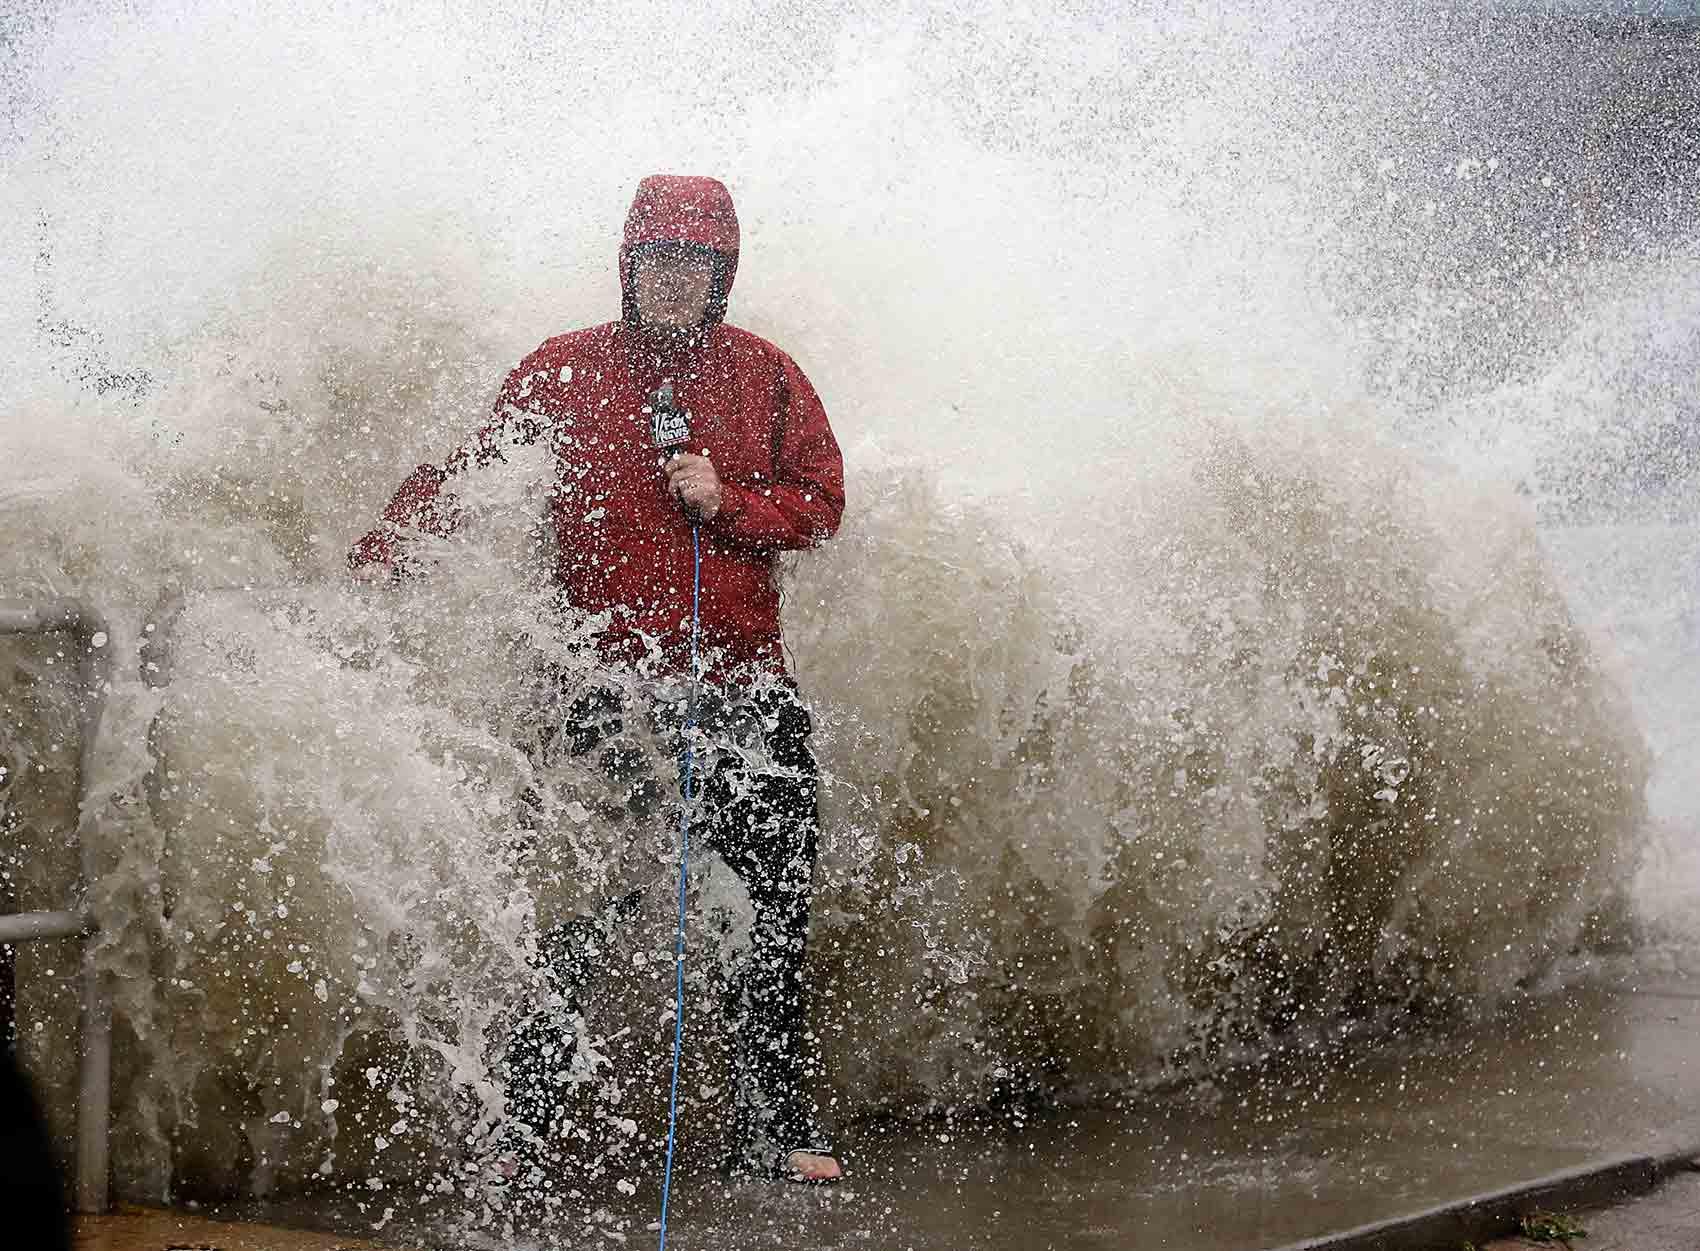 En nyhetsreporter överraskas av en våg när orkanen Hermine drar in mot Floridas kust.